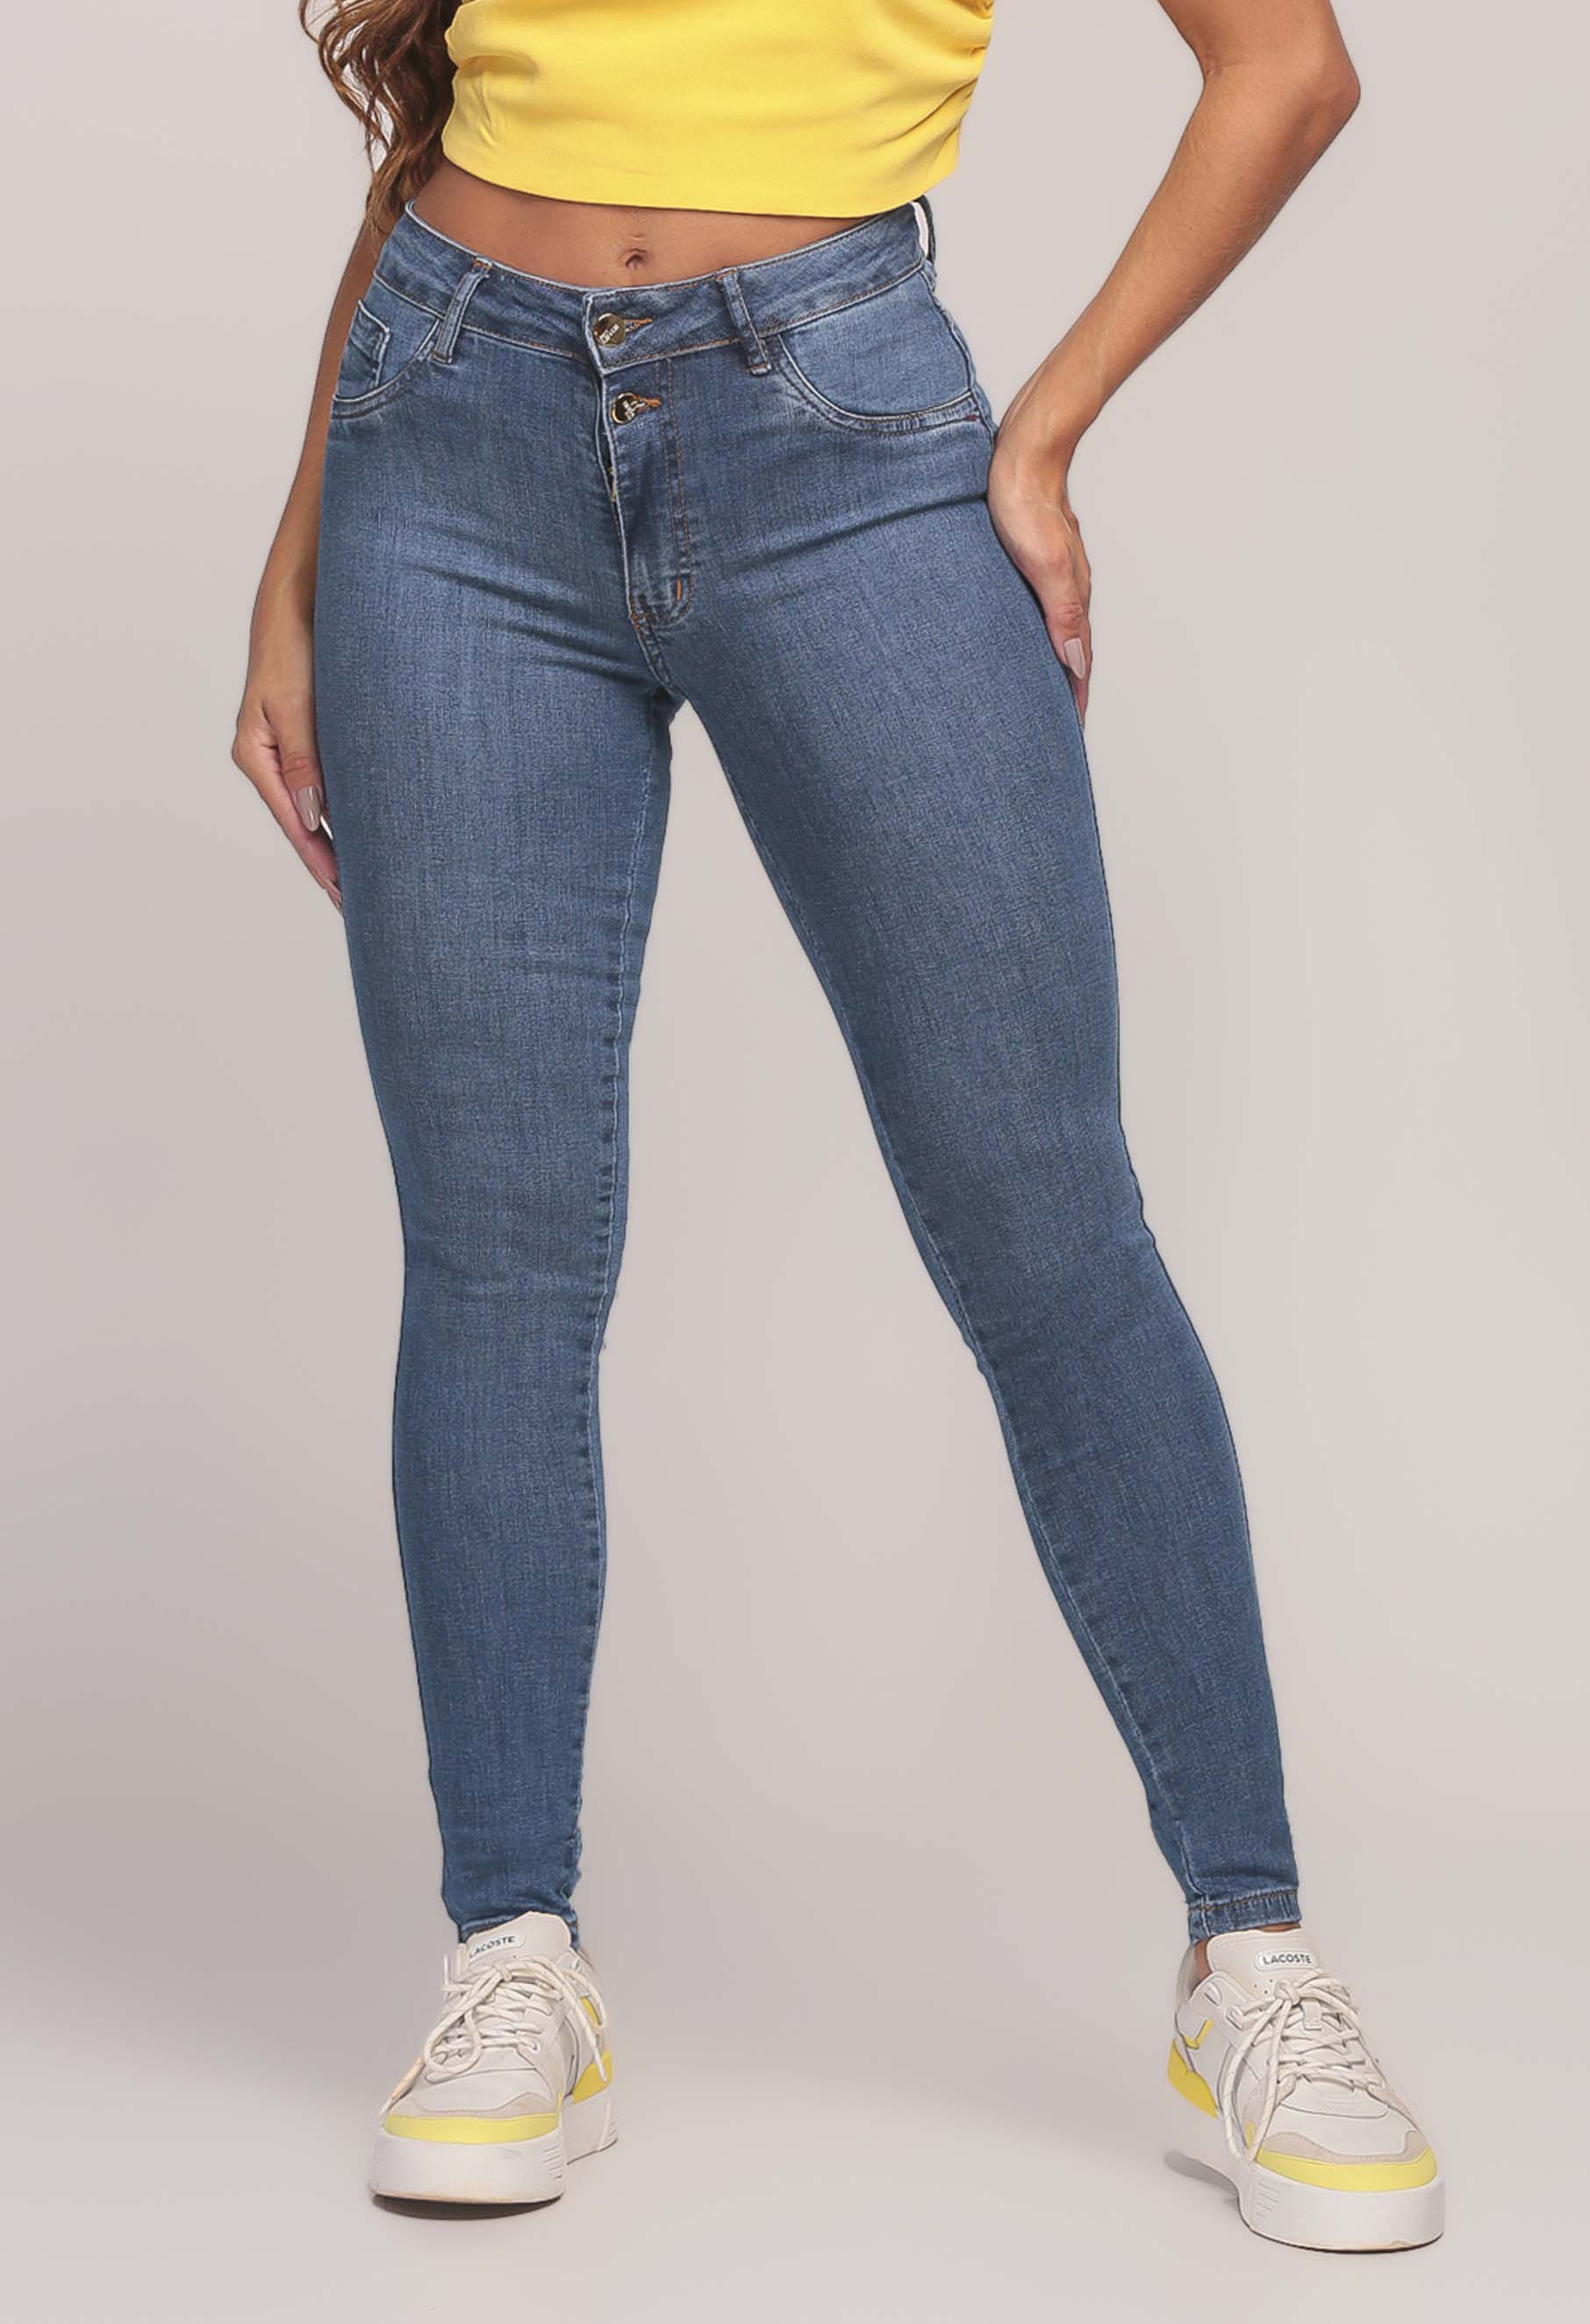 Calça Jeans Skinny Feminina Cós Alto Média - 767 Jeans